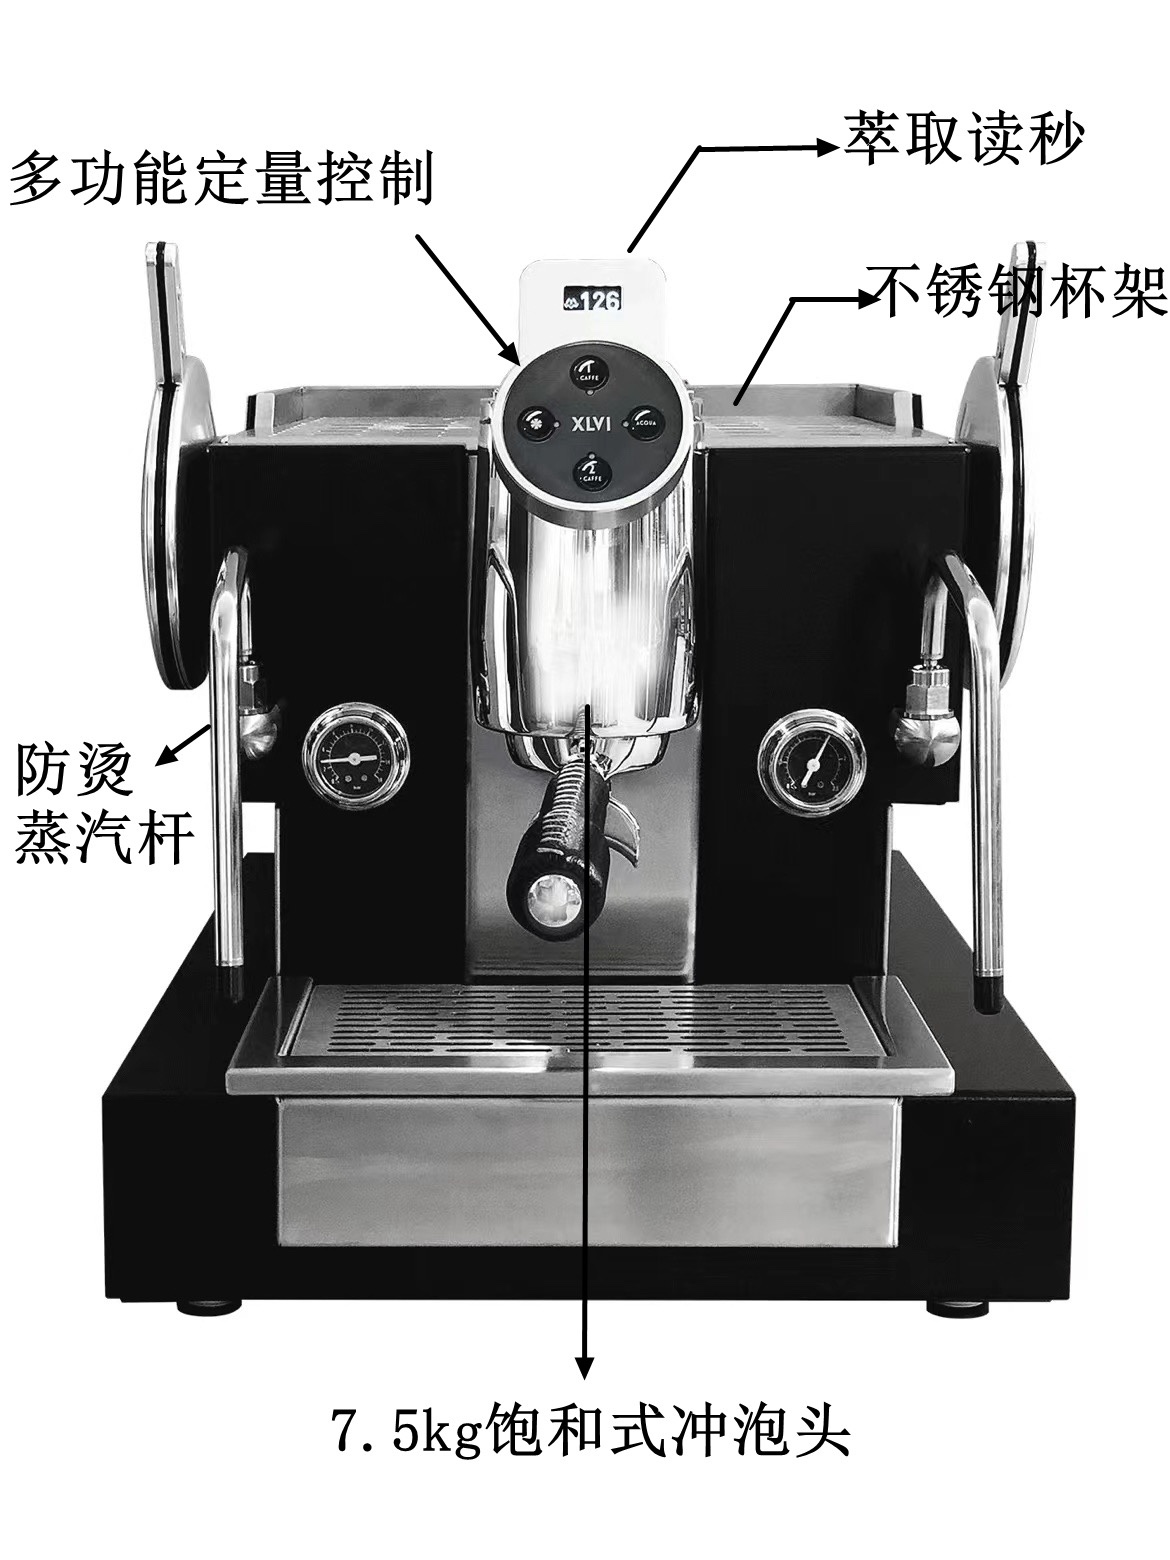 意大利进口XLVI意式半自动单头电控家用商用咖啡机xlvi Sth9型号-图2